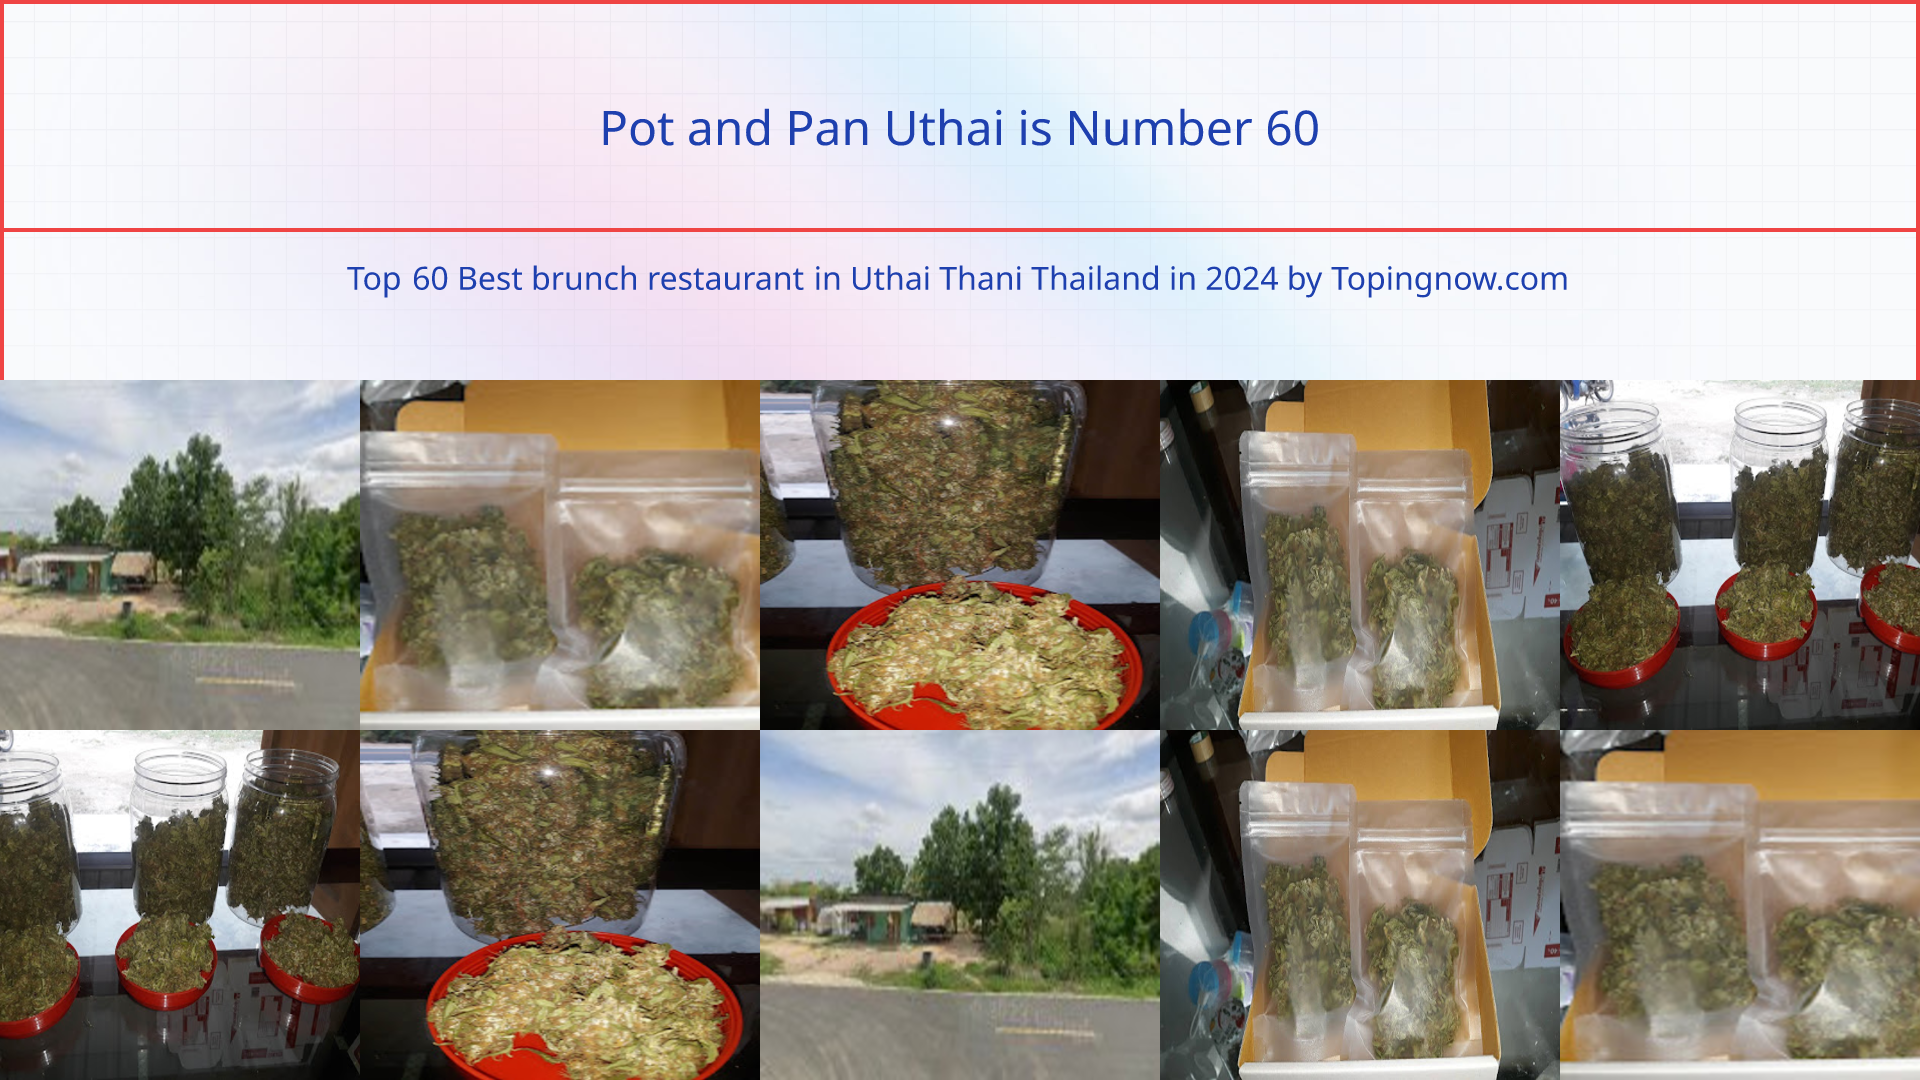 Pot and Pan Uthai: Top 60 Best brunch restaurant in Uthai Thani Thailand in 2024